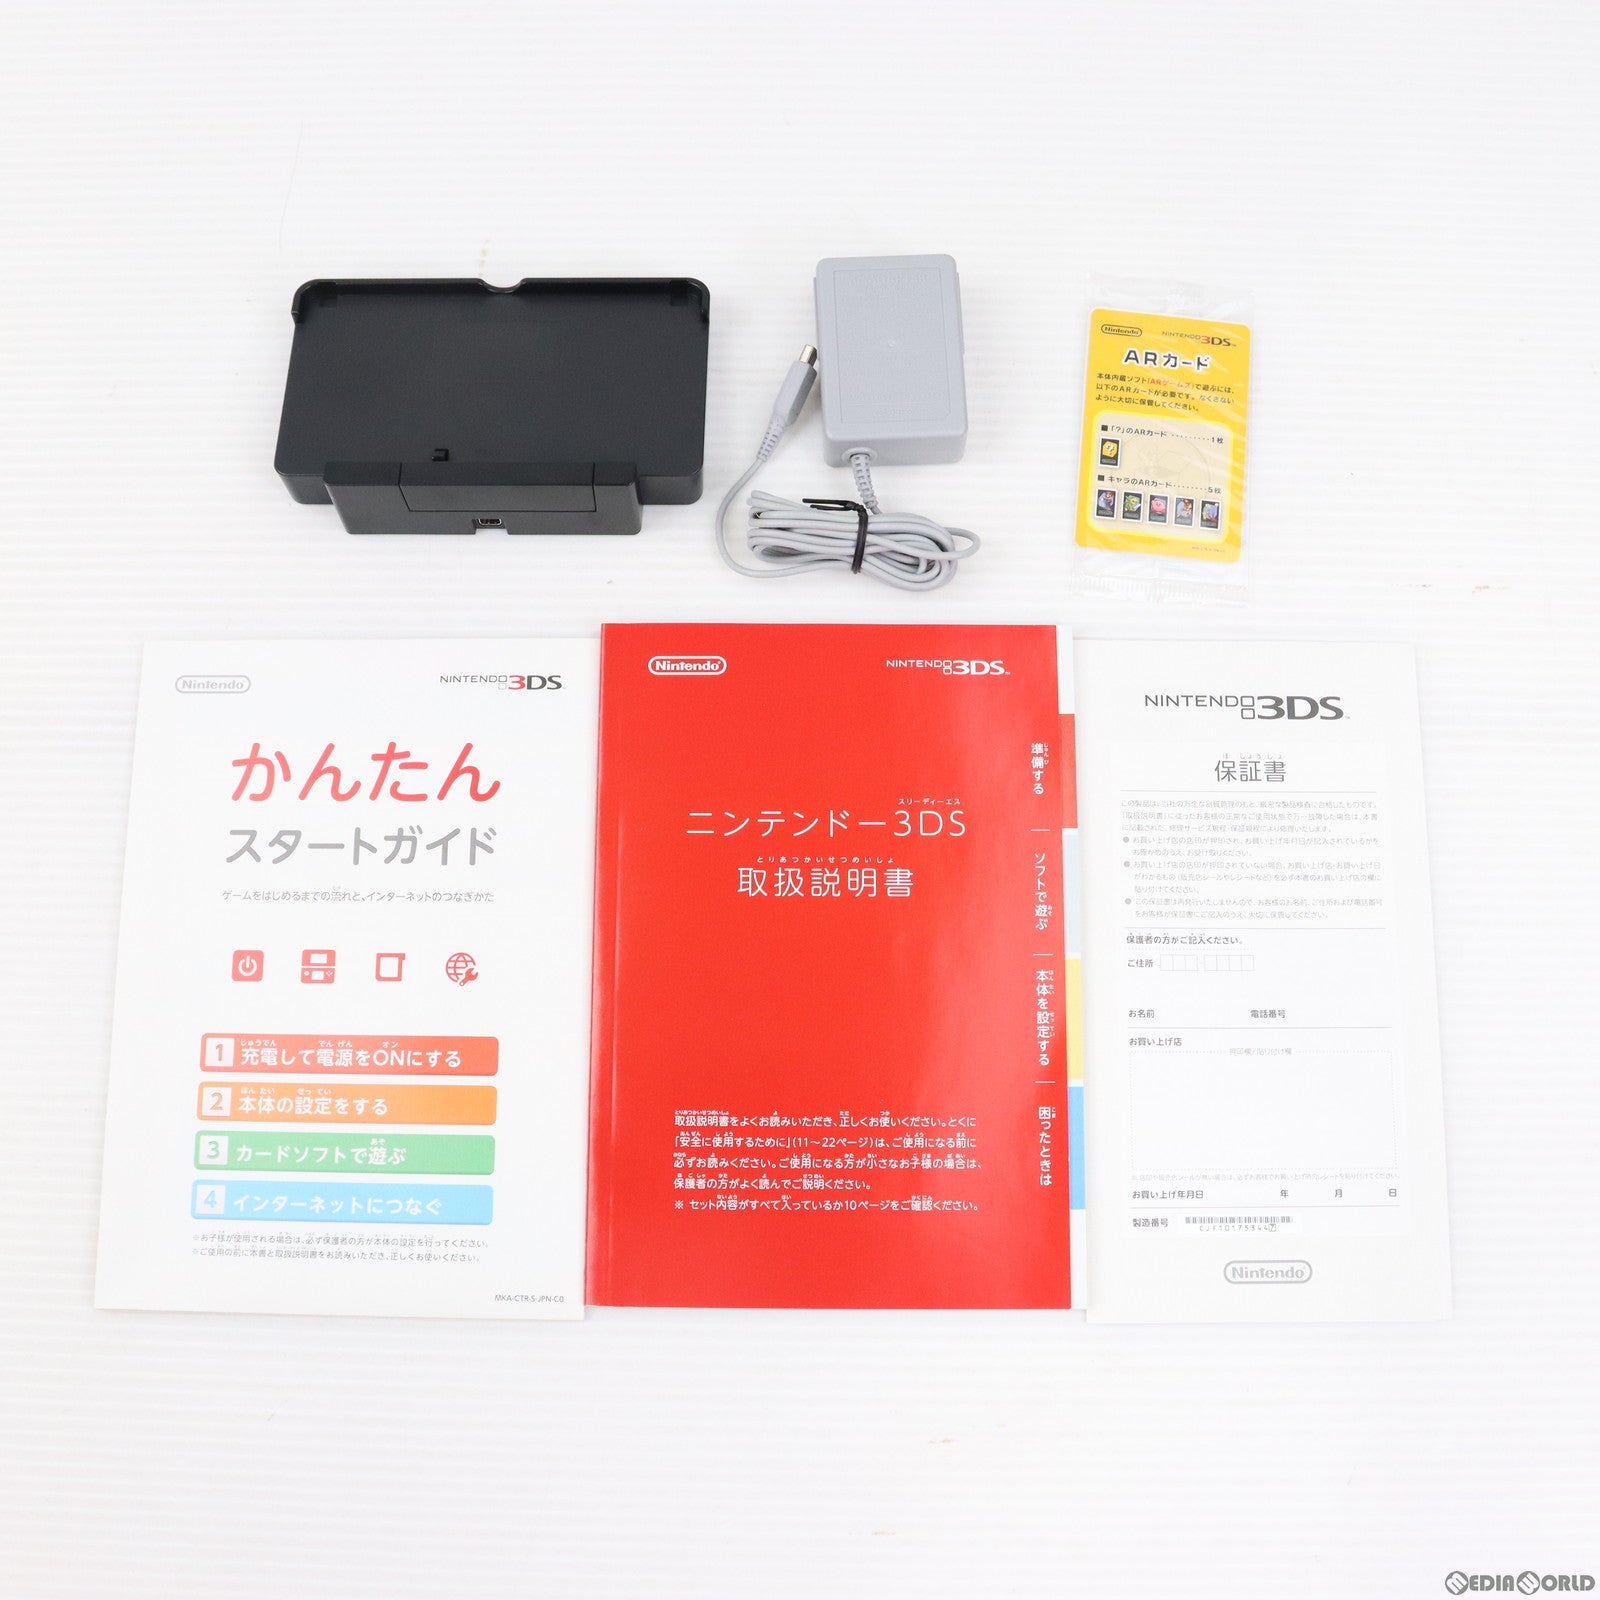 【中古即納】[本体][3DS]ニンテンドー3DS コスモブラック(CTR-S-KAAA)(20110226)